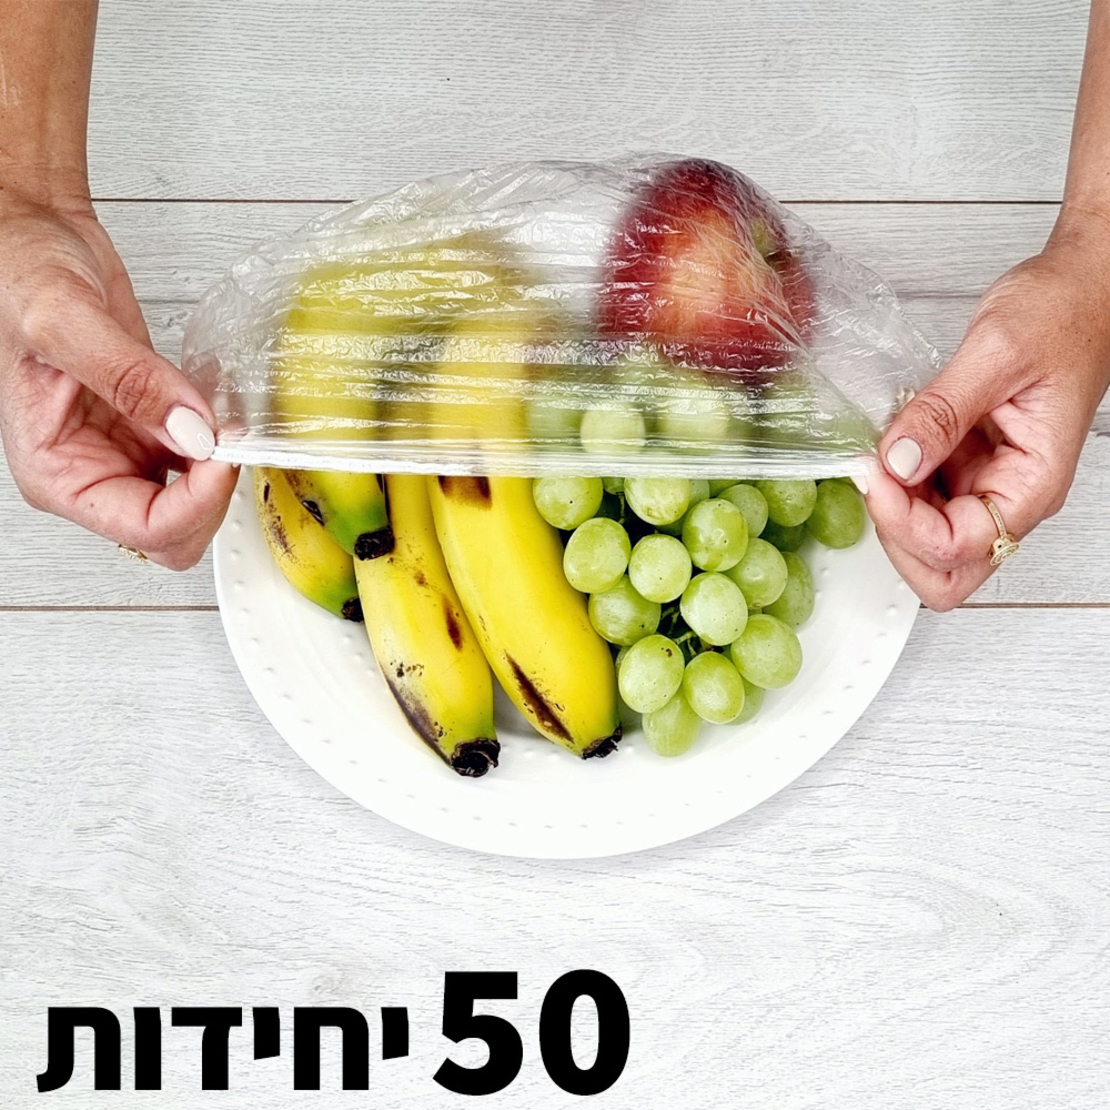 מארזי פודיס 30 יח' לקטניות ומזון + 78 מדבקות בעברית + 50 יח' שקיות עיטוף